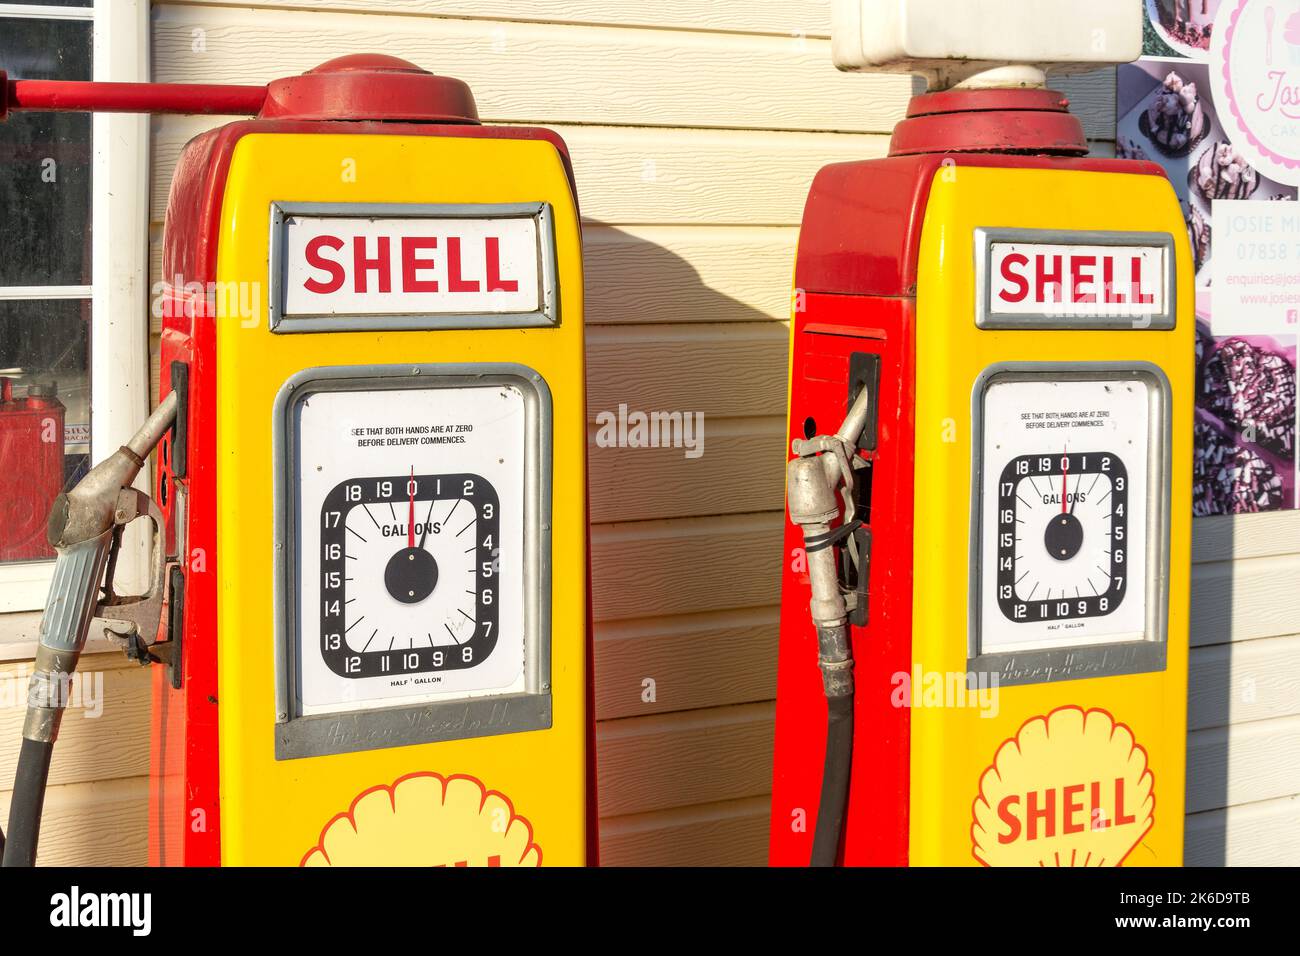 Pompes à huile Shell des années 1950 au John's Motors Classic car garage, Watling Street East, Towcester, Northamptonshire, Angleterre, Royaume-Uni Banque D'Images